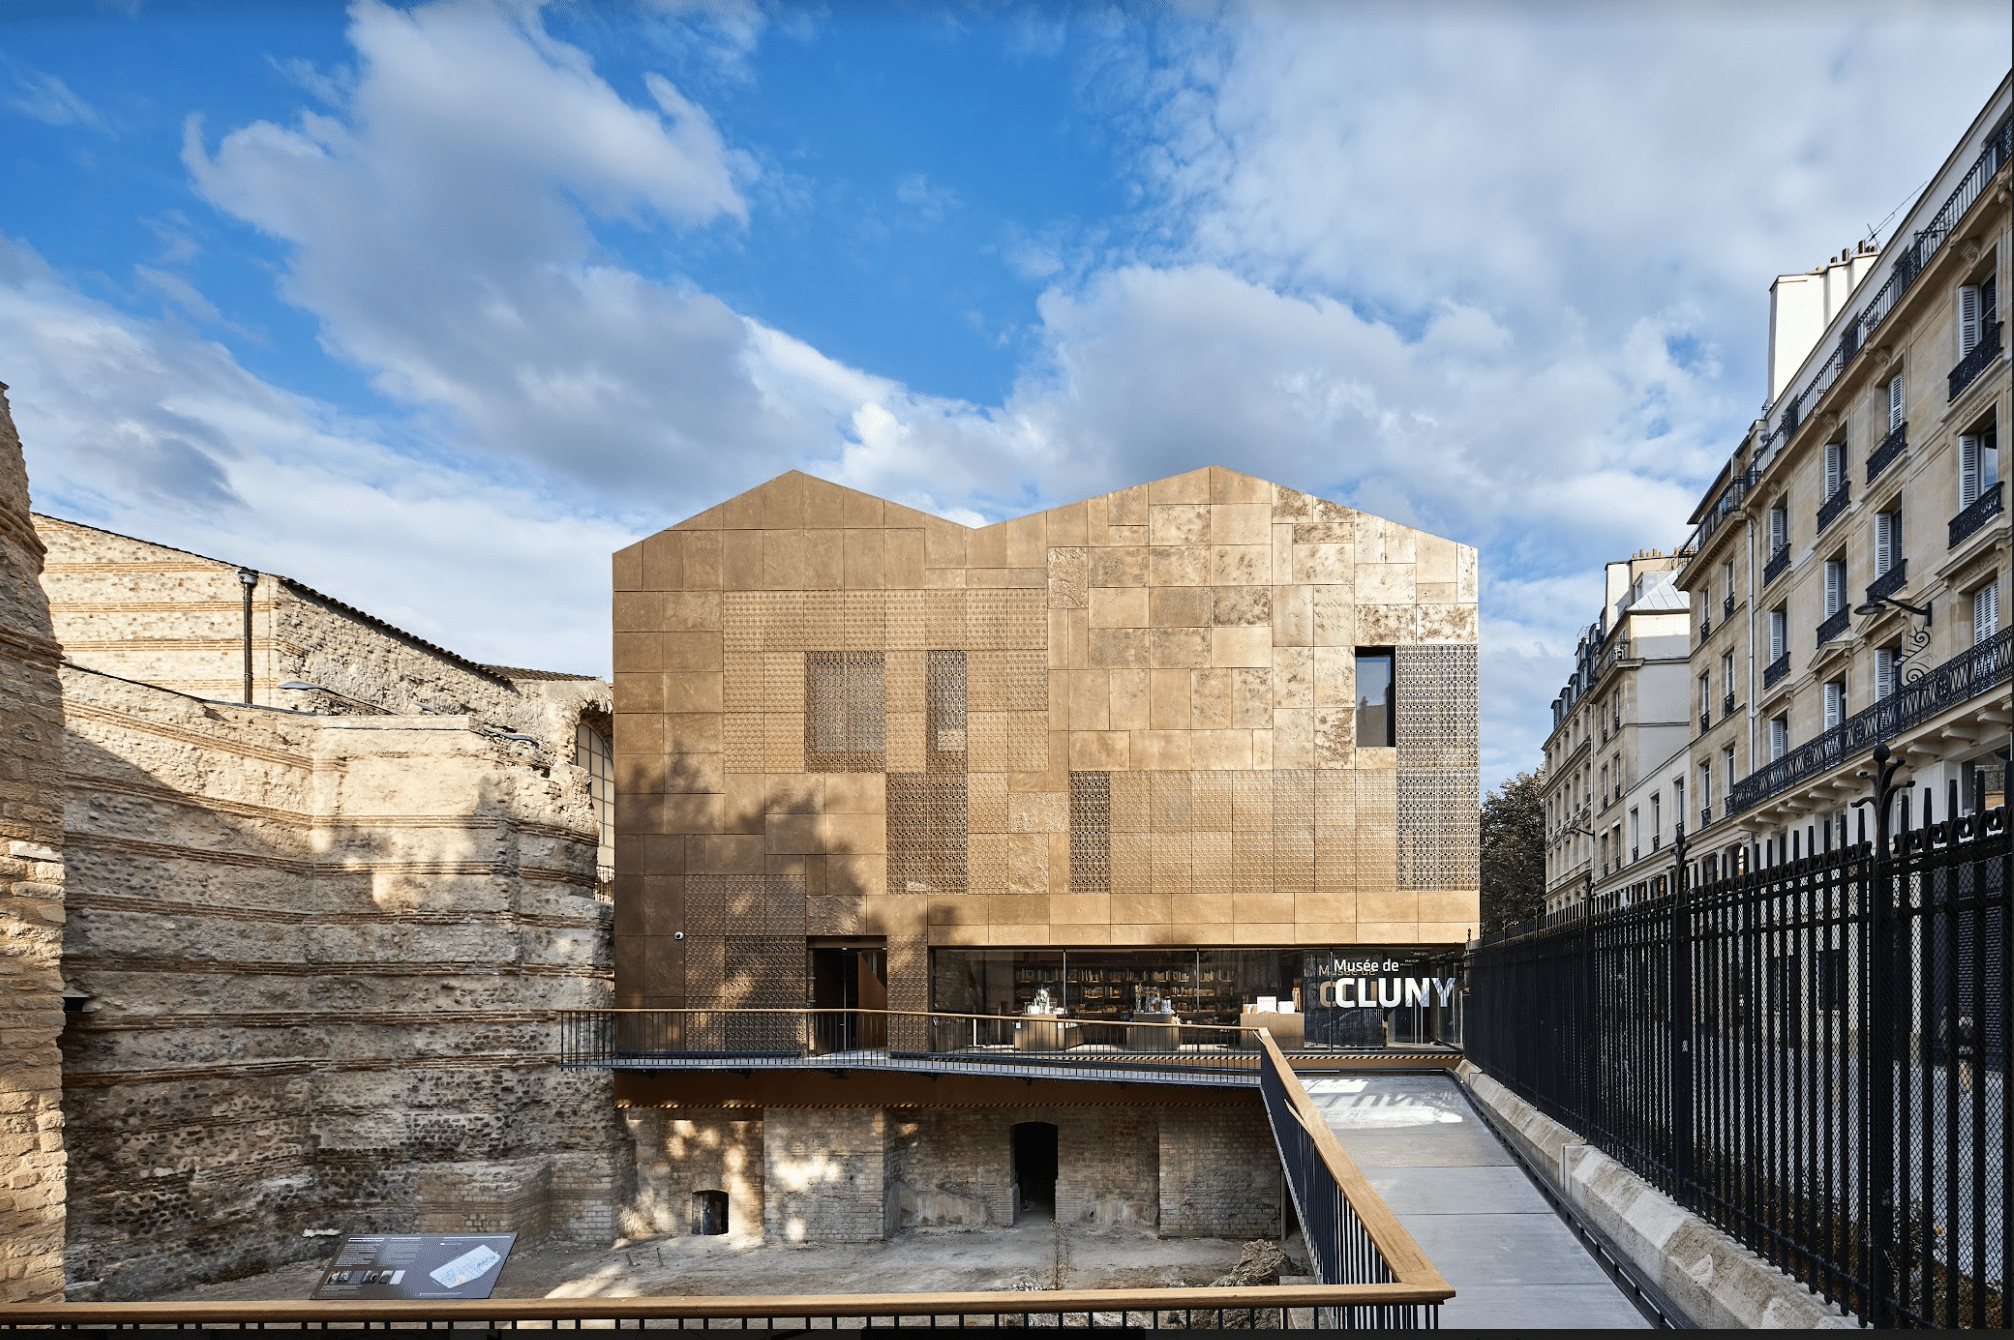 Nach Jahren der Sanierung und Restaurierung wiedereröffnet: Das Musée de Cluny in Paris. Foto: © M. Denancé / musée de Cluny - musée national du Moyen Âge